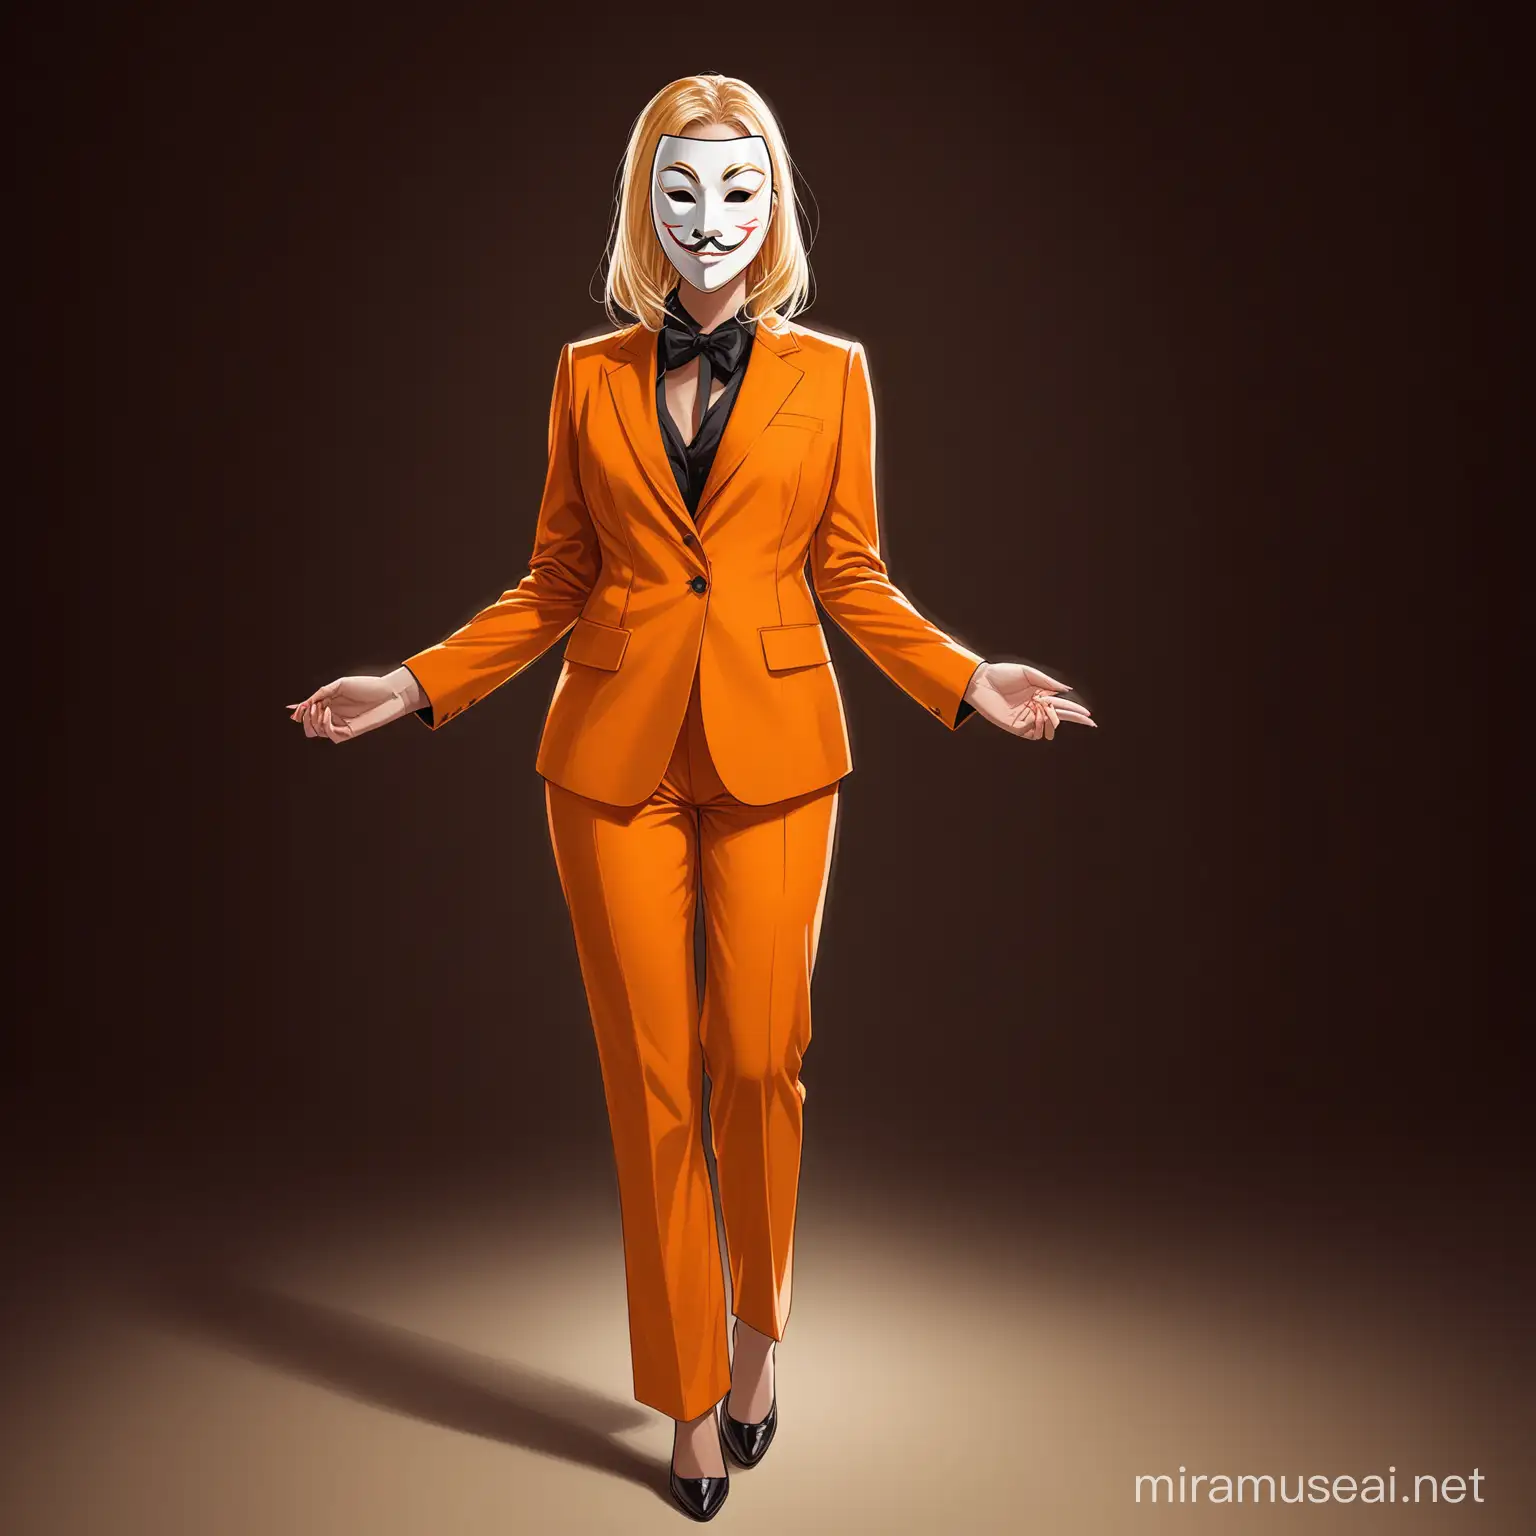 una mujer con traje naranja y cabello rubio, lleva puesta una mascara de teatro.

Que la imagen muestre su cuerpo completo.